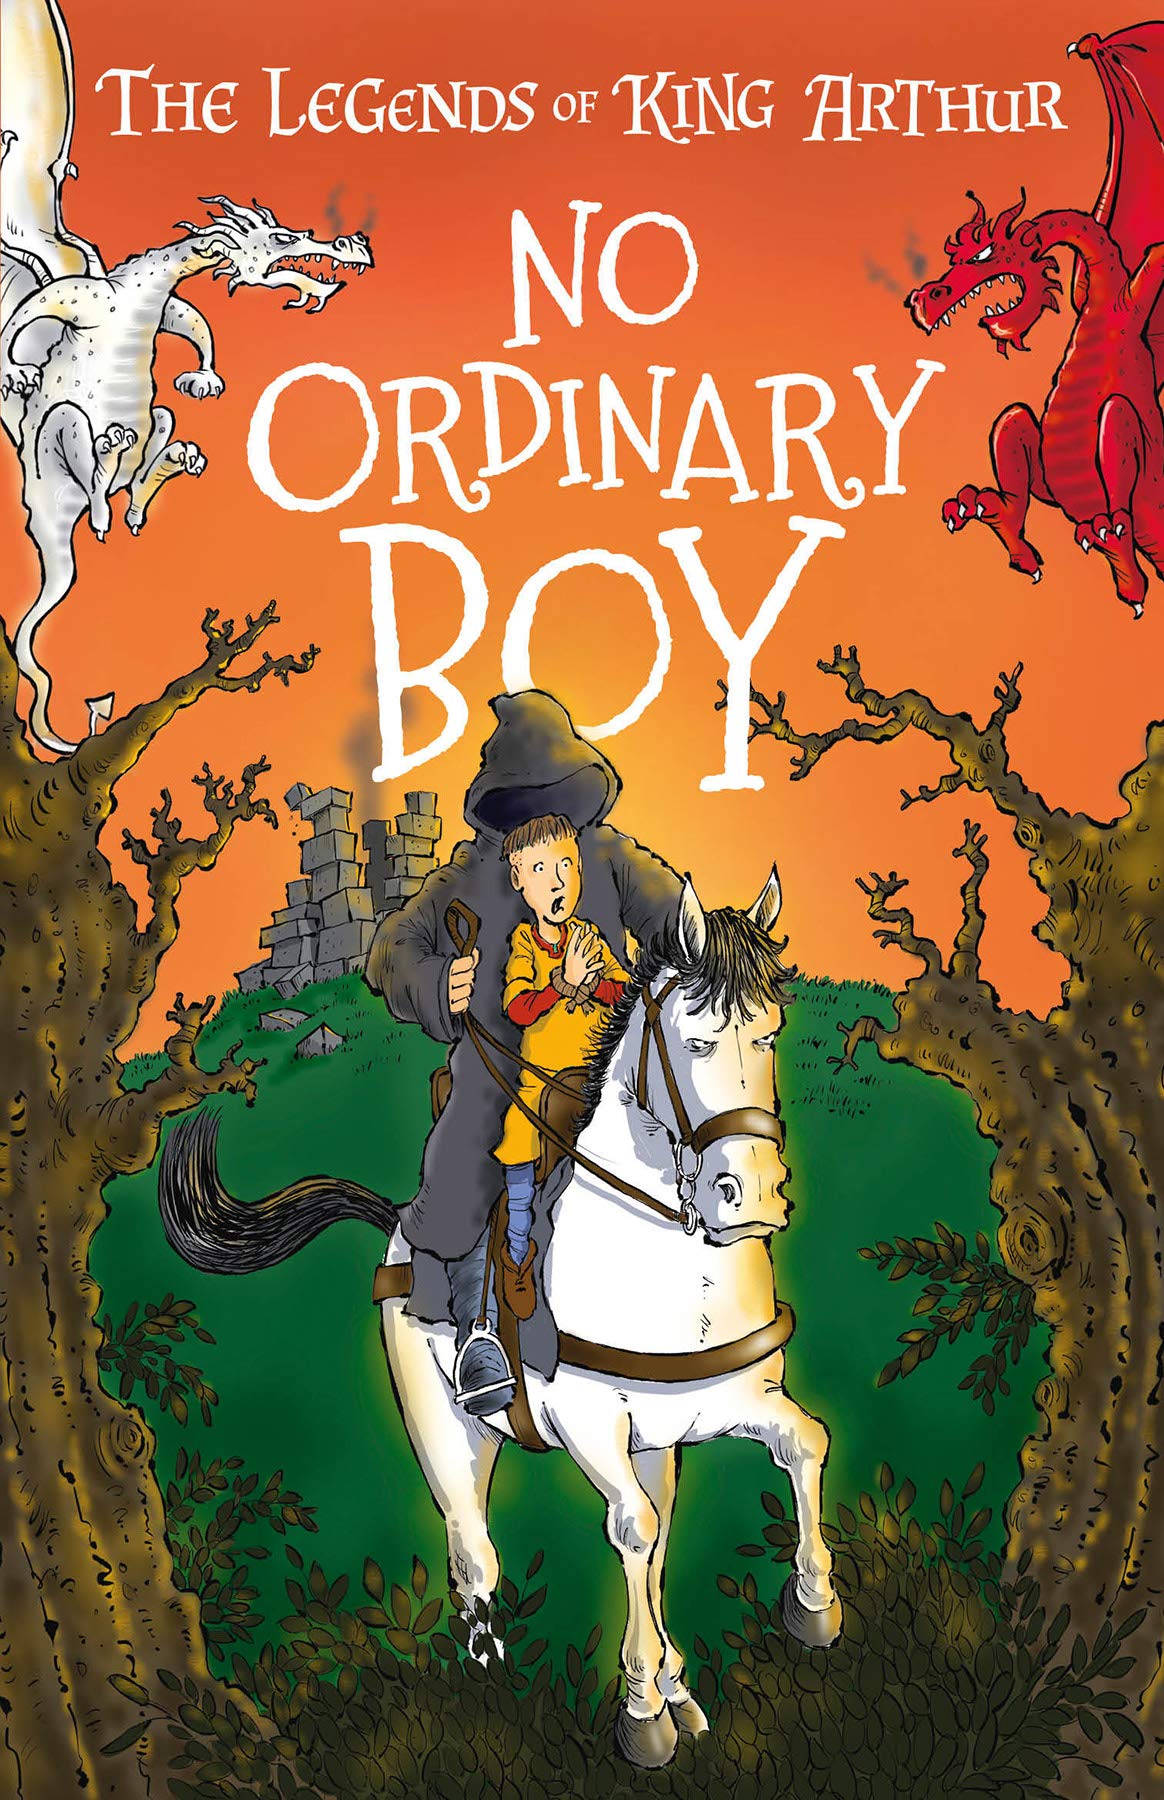 No Ordinary Boy